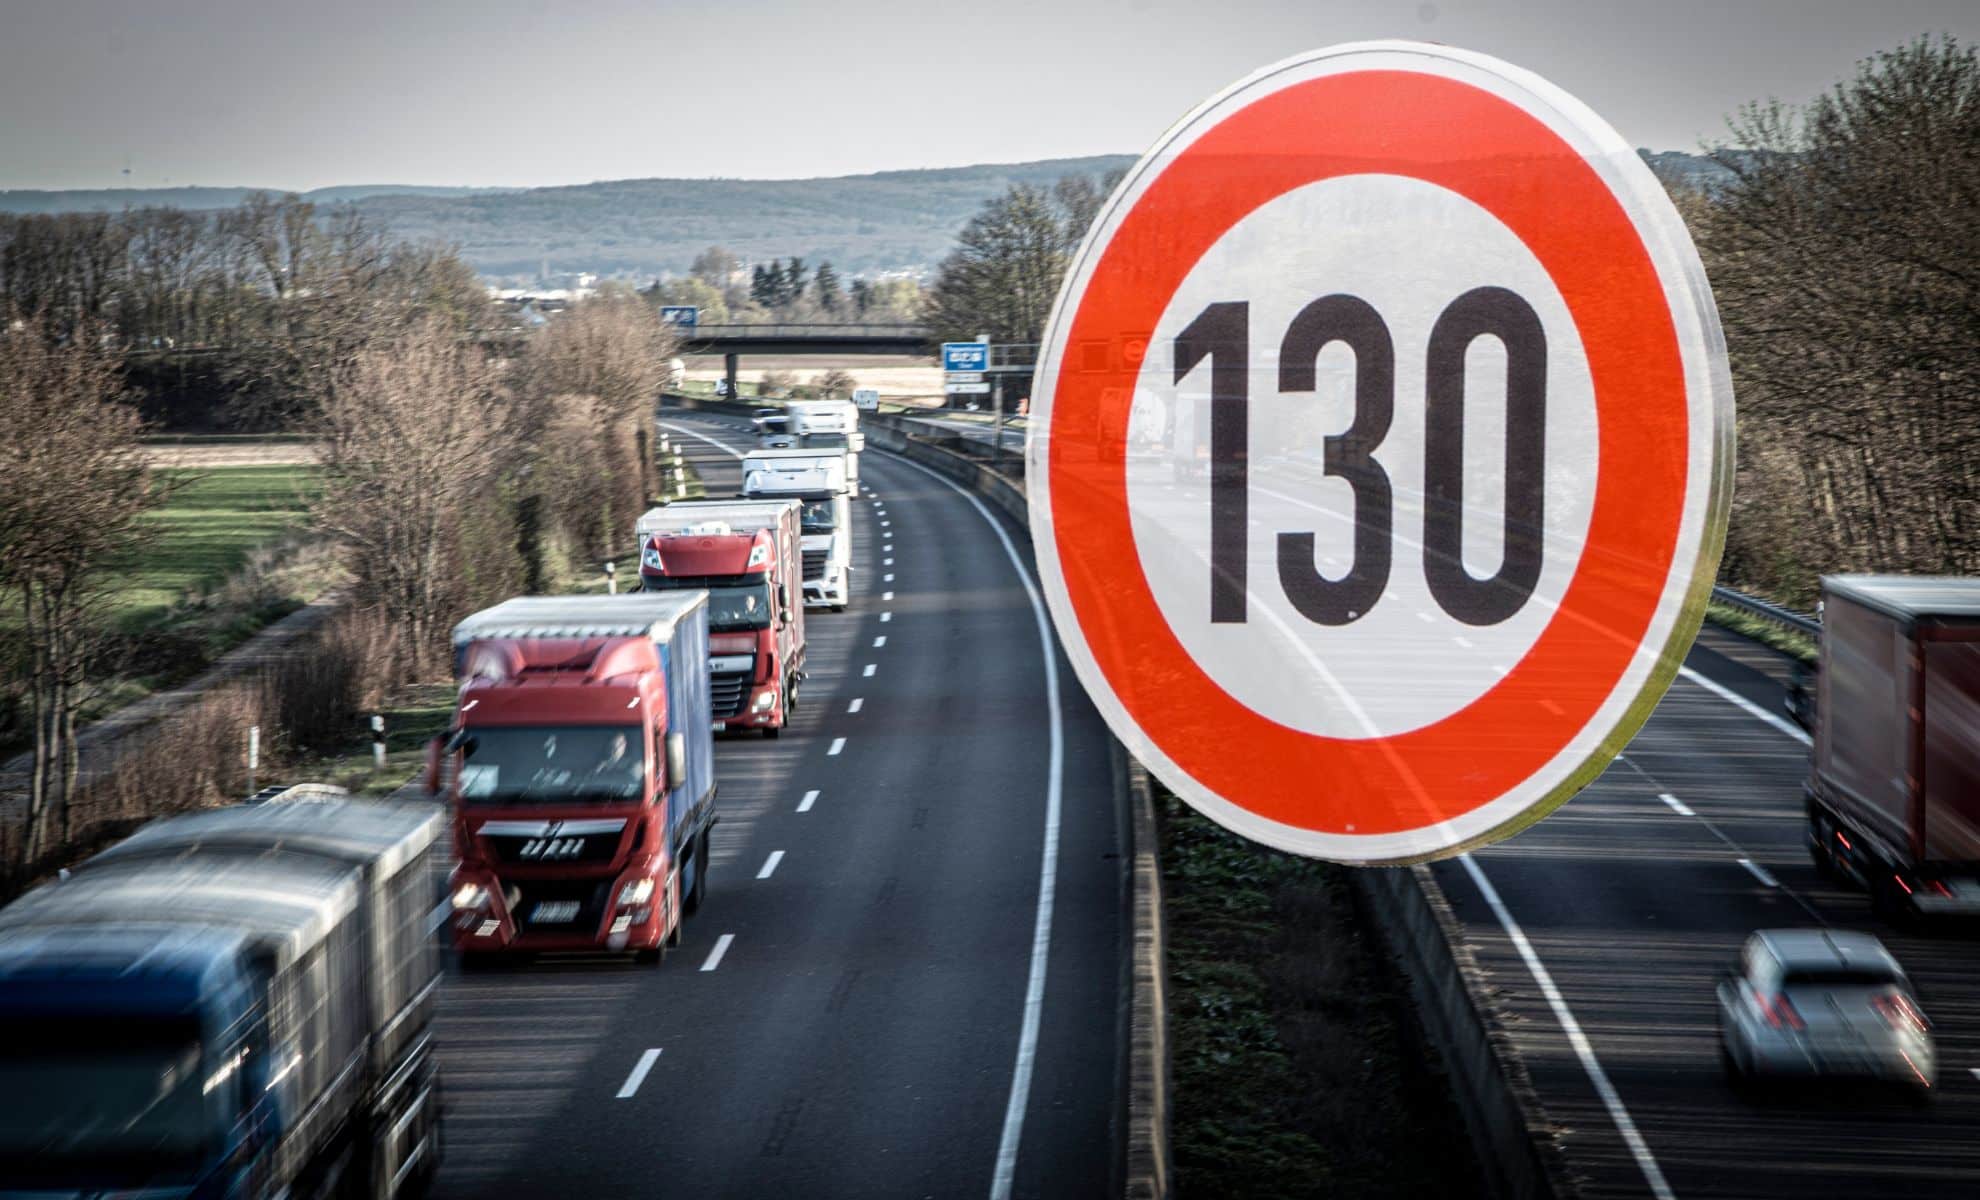 Incroyable ! La fin de la limitation à 130 km/h sur autoroute en France ?